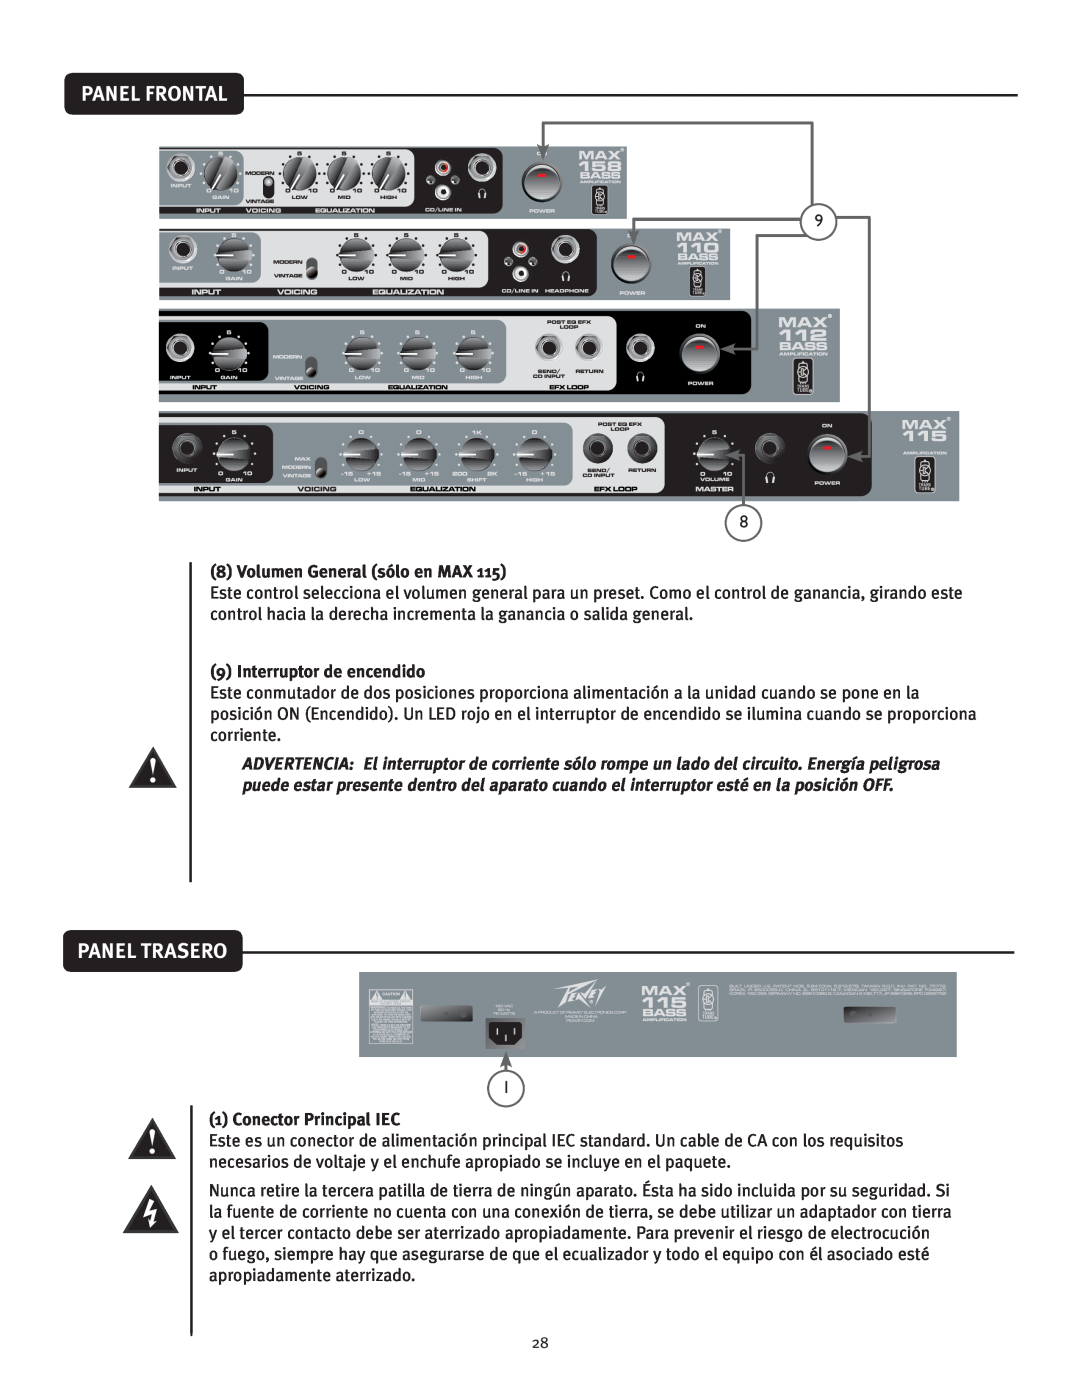 Peavey 112 Panel Trasero, Volumen General sólo en MAX, Interruptor de encendido, Conector Principal IEC, Panel Frontal 